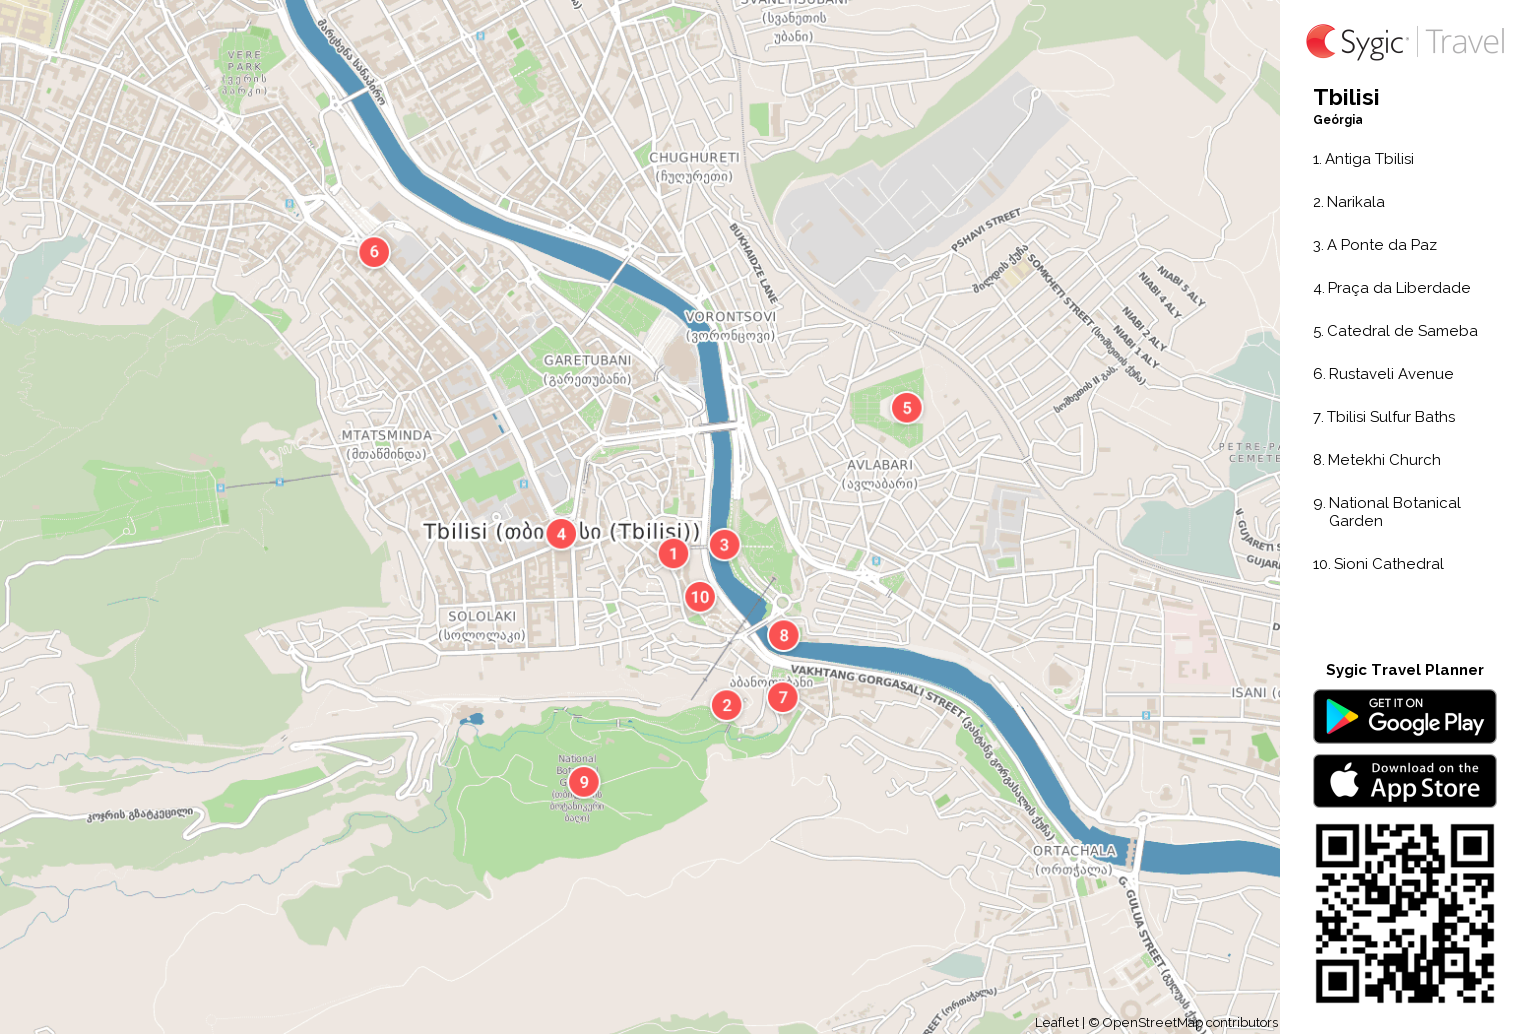 tbilisi-mapa-turistico-em-pdf